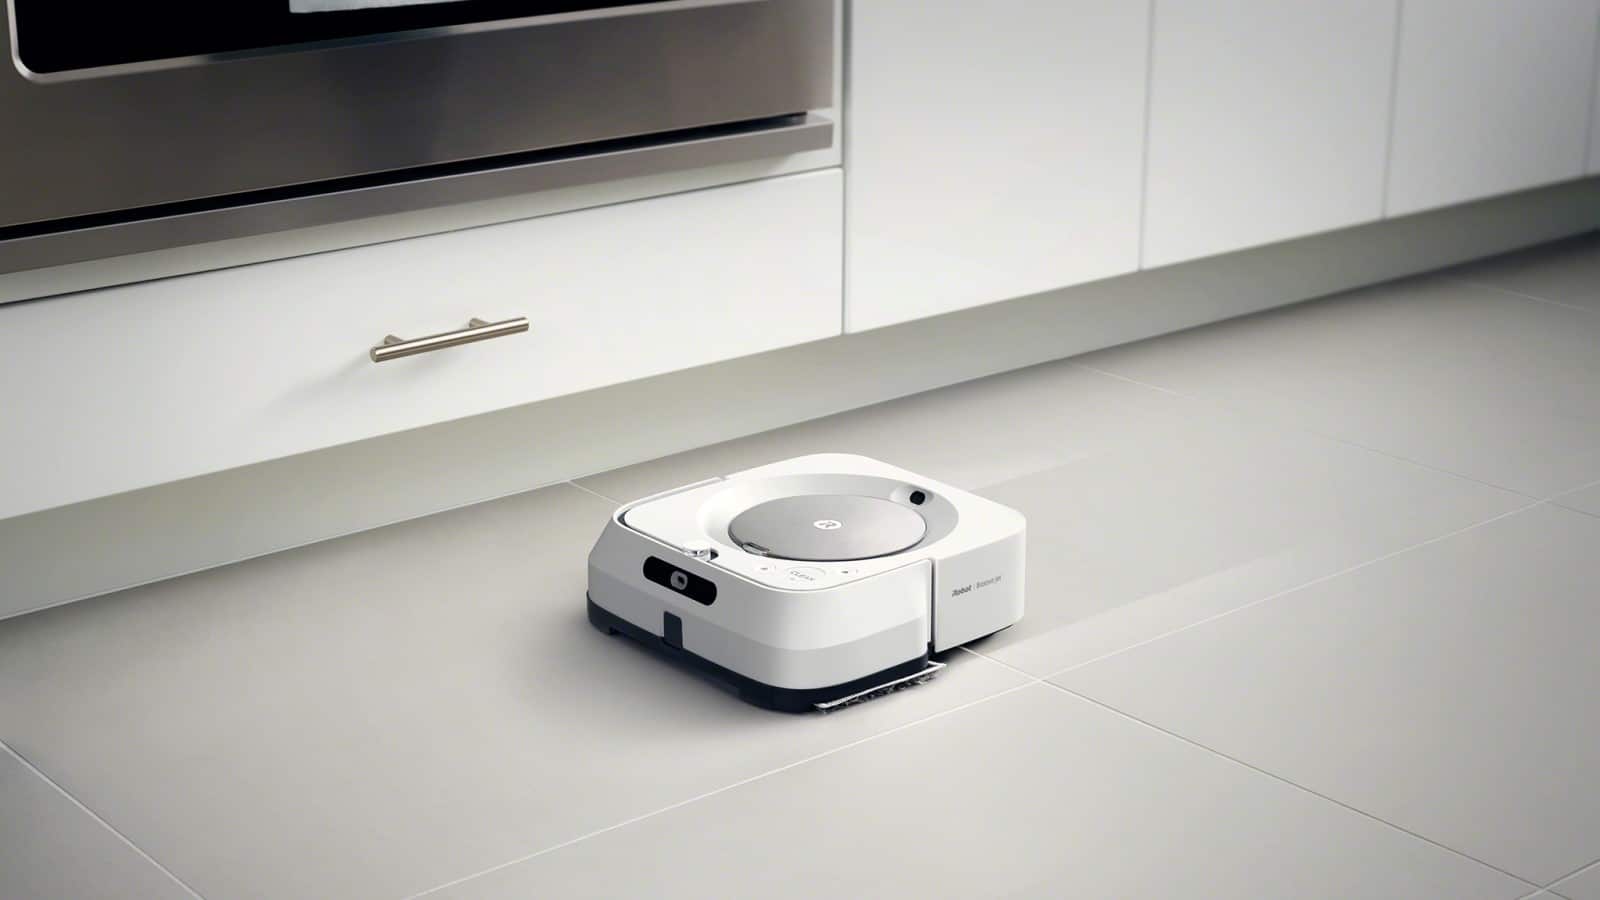 หุ่นยนต์ถูพื้น braava m6 ทำความสะอาดพื้นห้องครัว